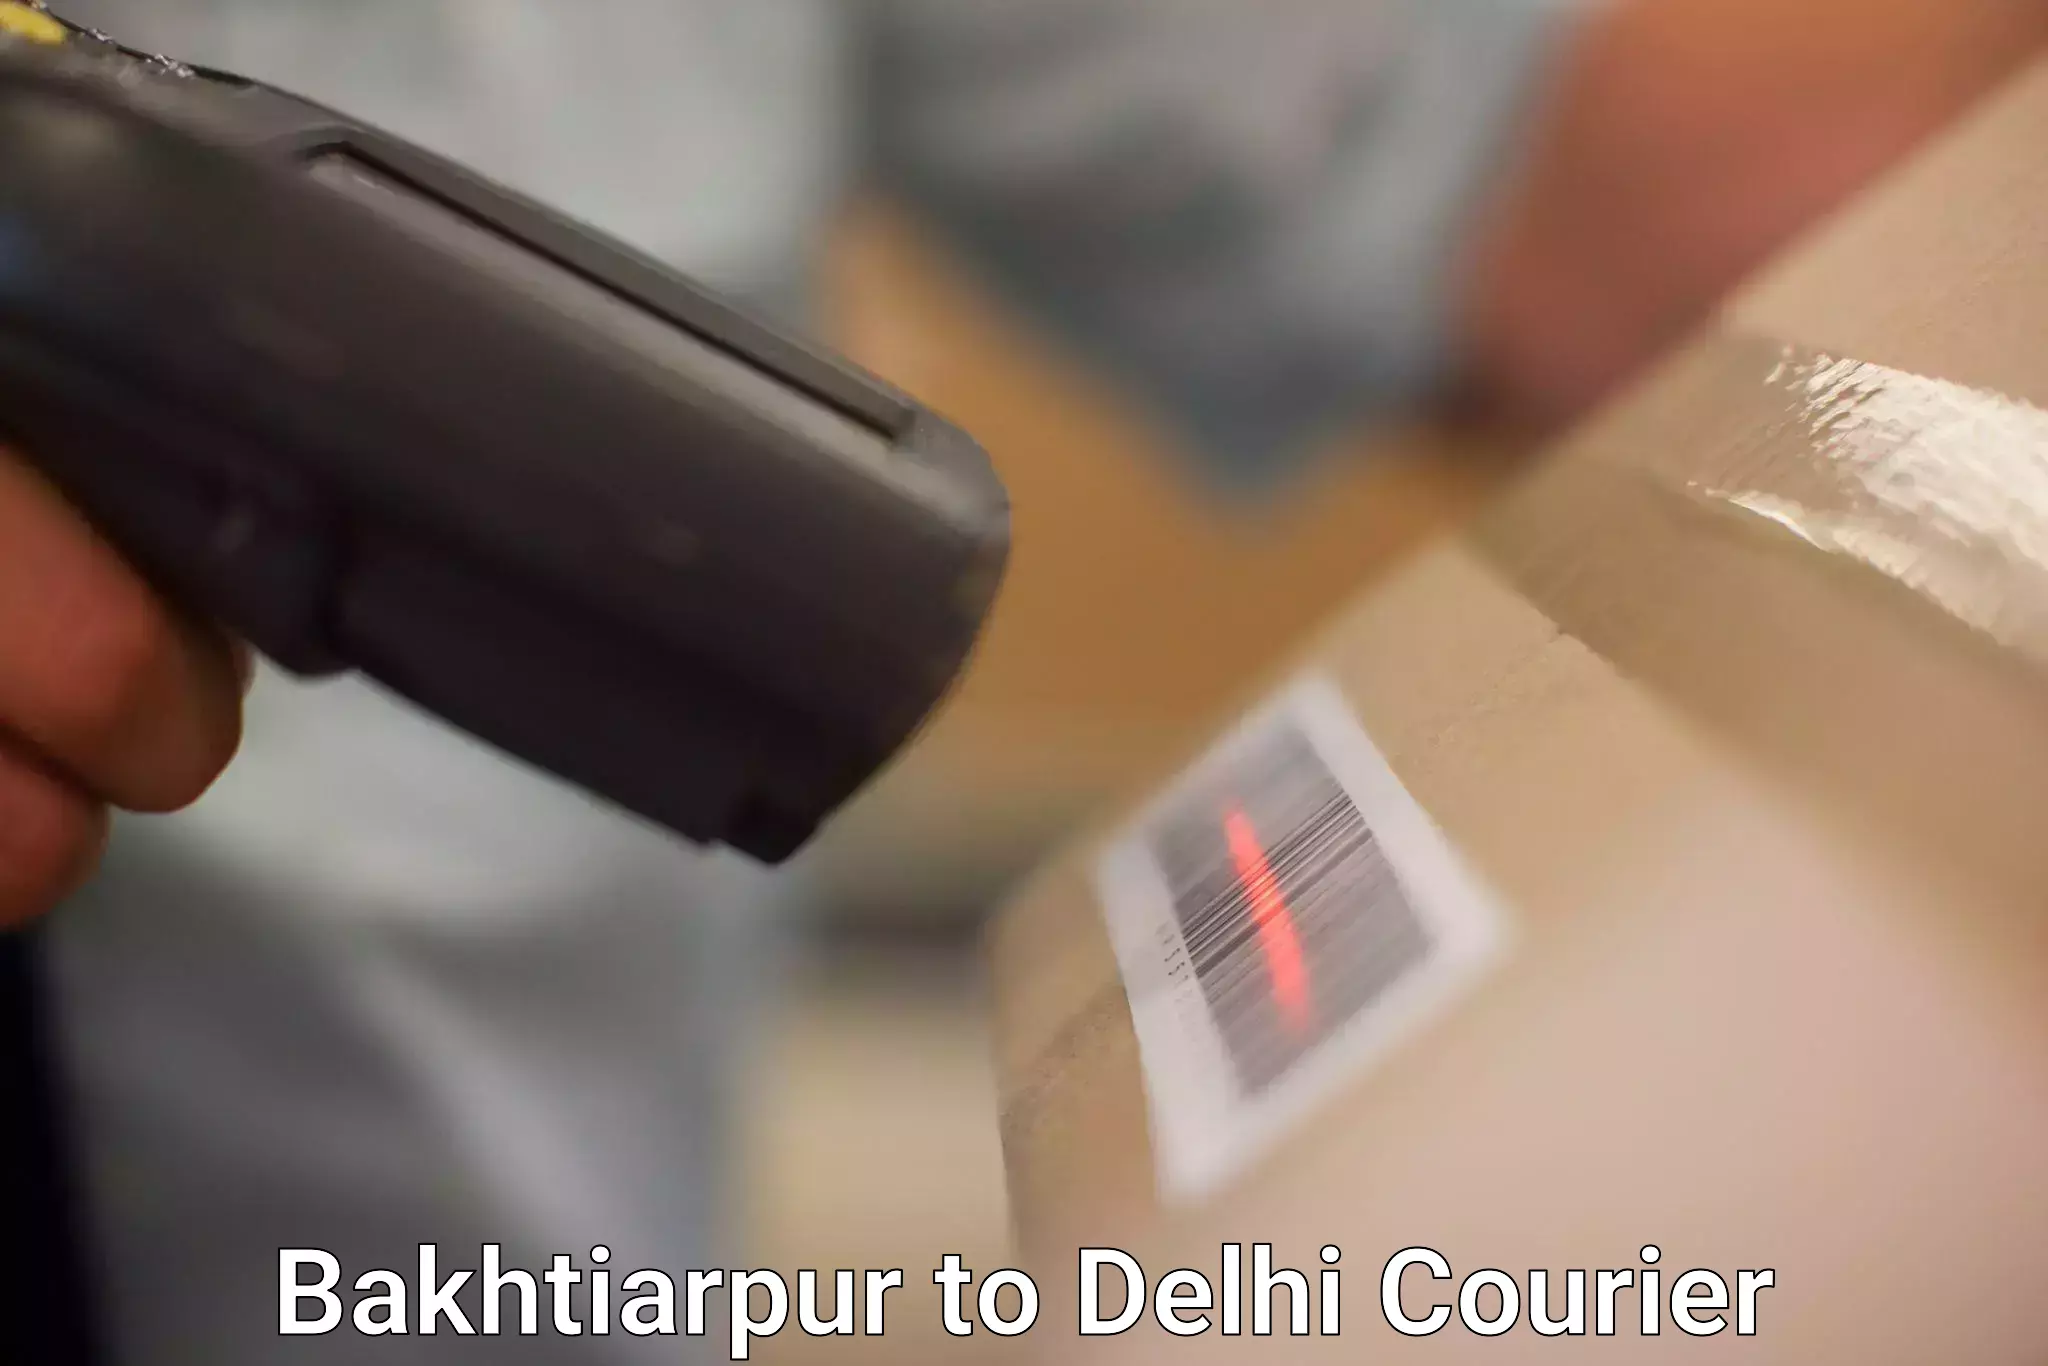 Efficient parcel service Bakhtiarpur to East Delhi